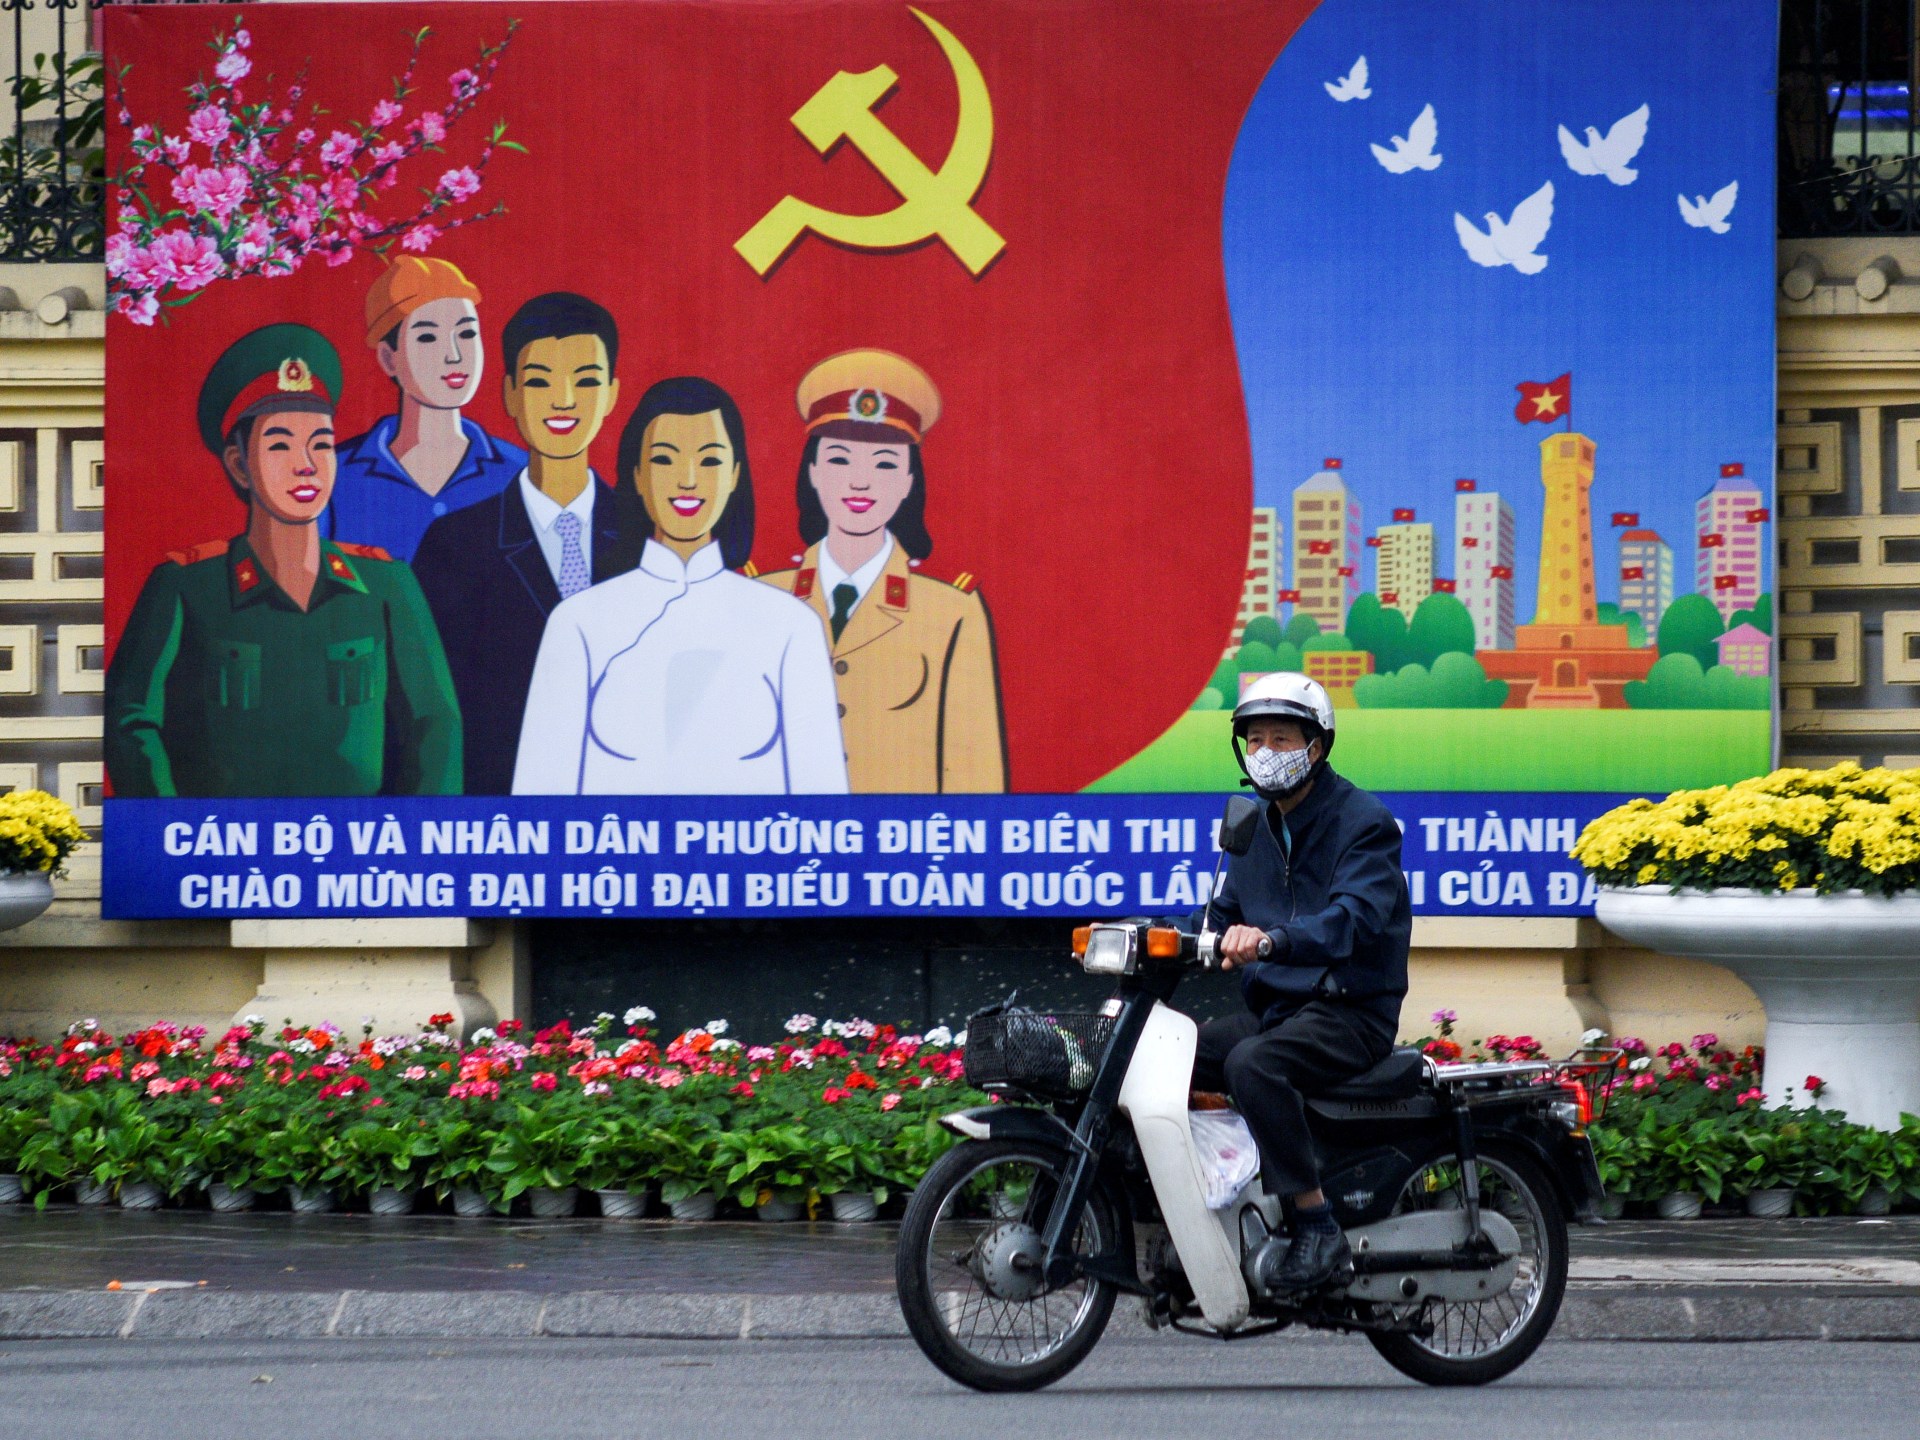 Việt Nam cách chức hai phó thủ tướng trong chiến dịch chống tham nhũng |  tin tức về nhiễm virus corona